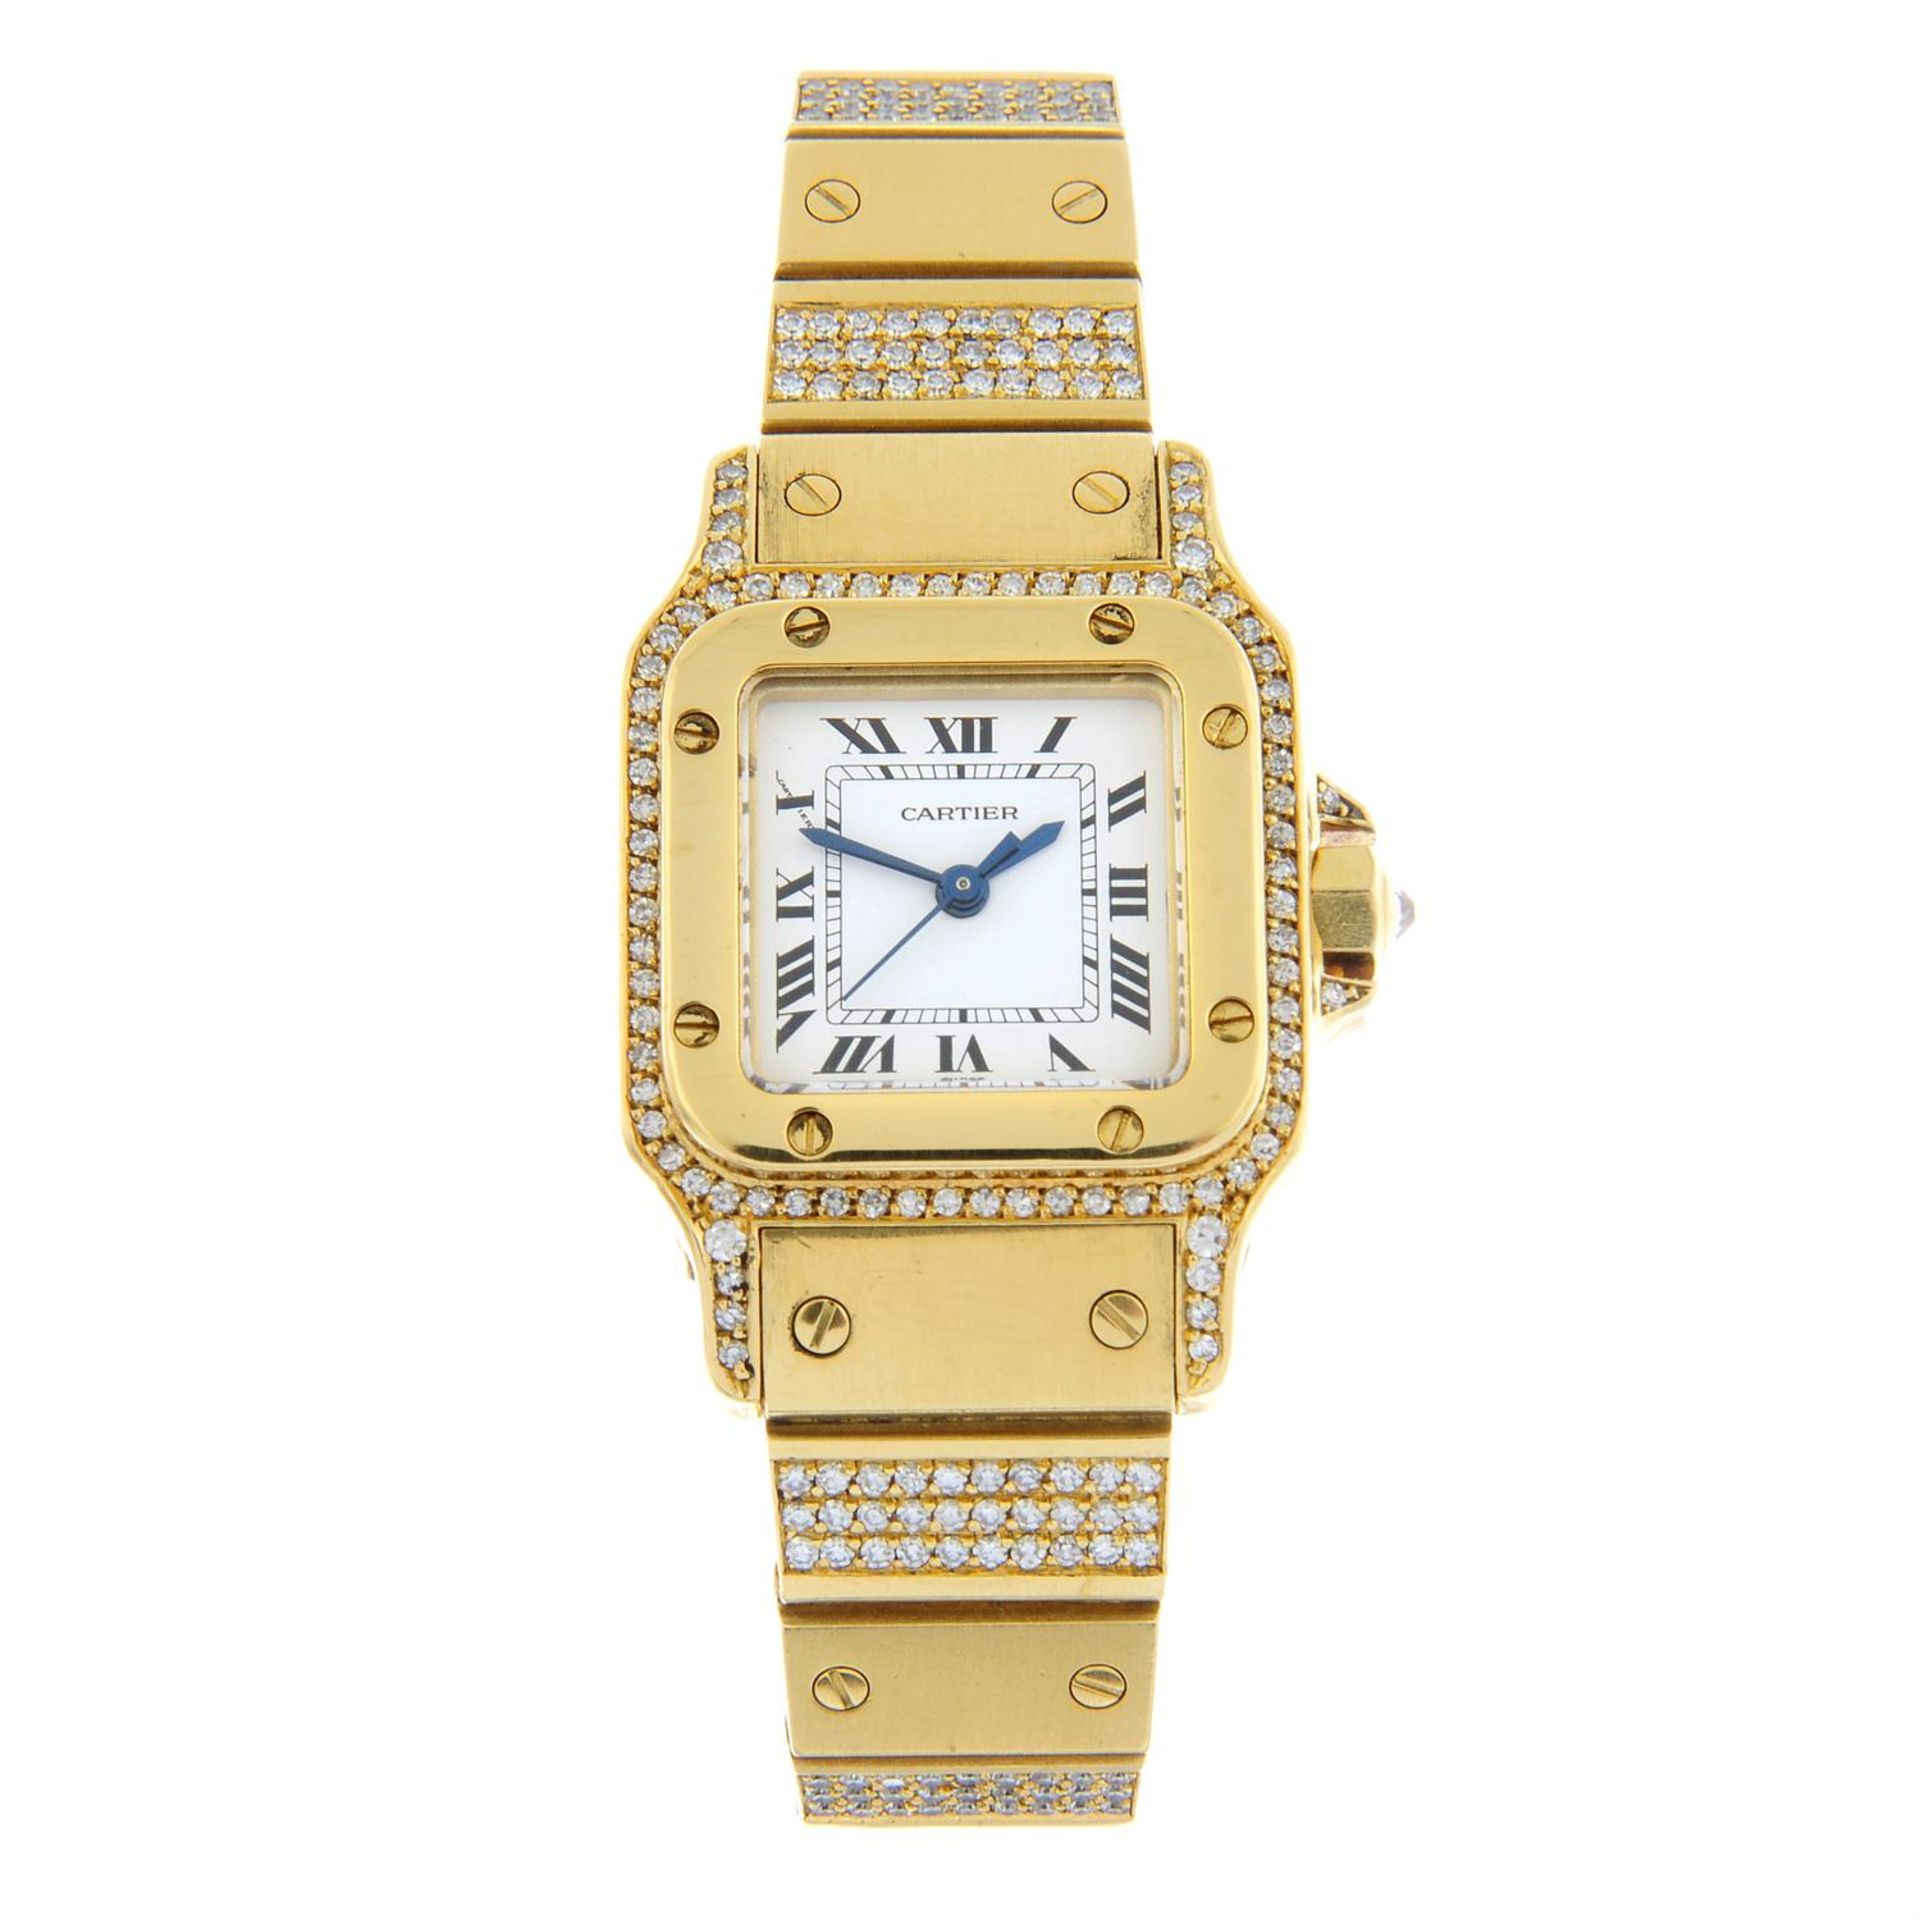 CARTIER - an 18ct gold diamond set Santos bracelet watch, 24mm.